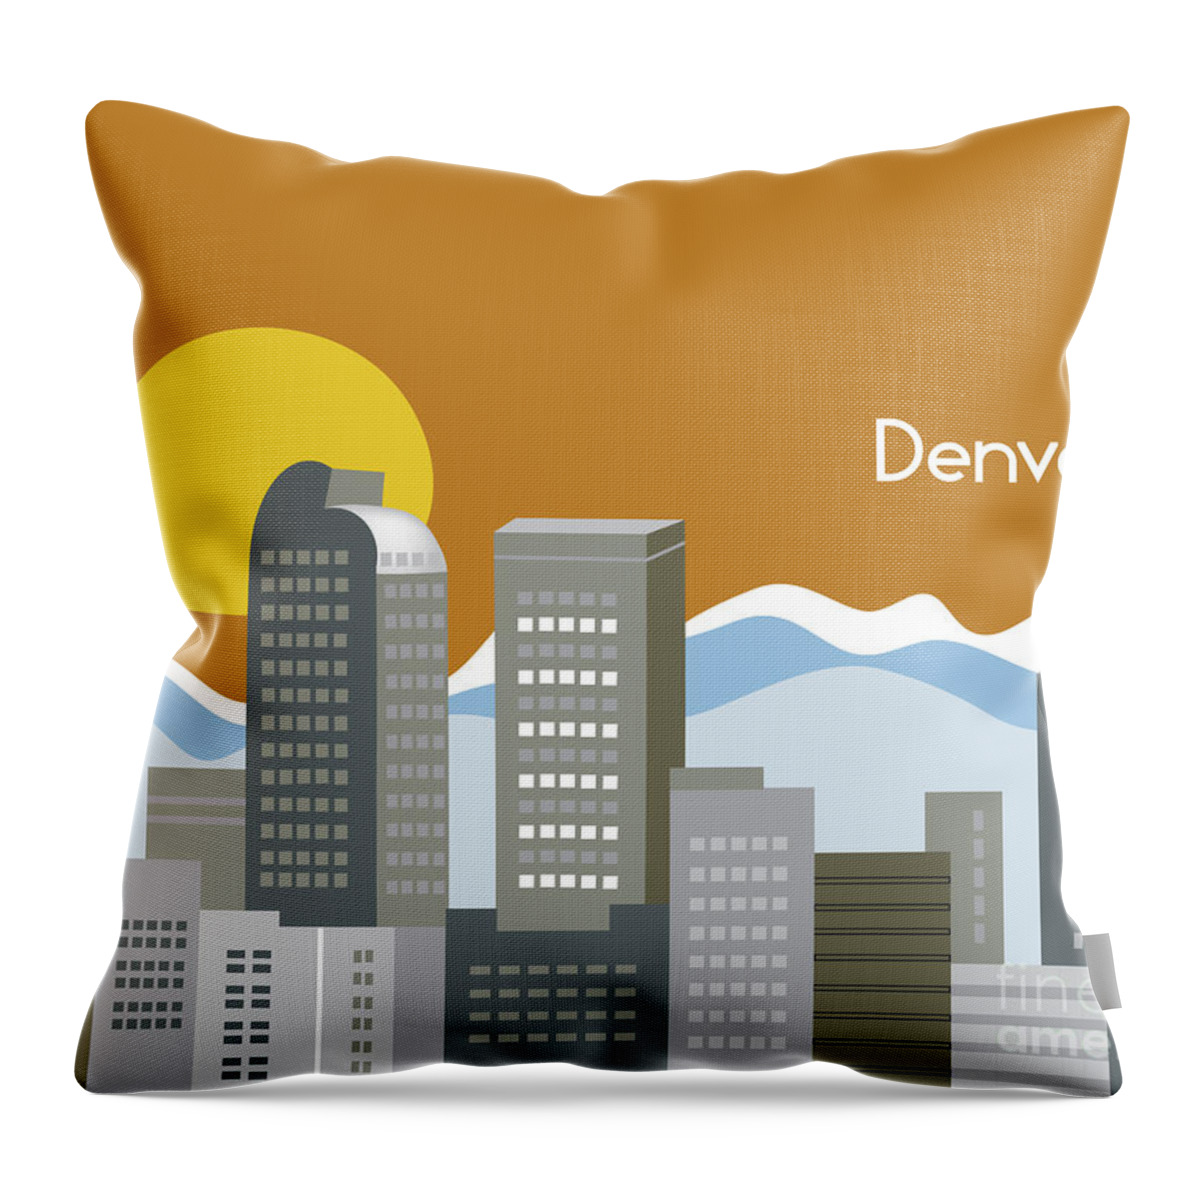 Denver Throw Pillow featuring the digital art Denver Colorado Horizontal Skyline Print by Karen Young